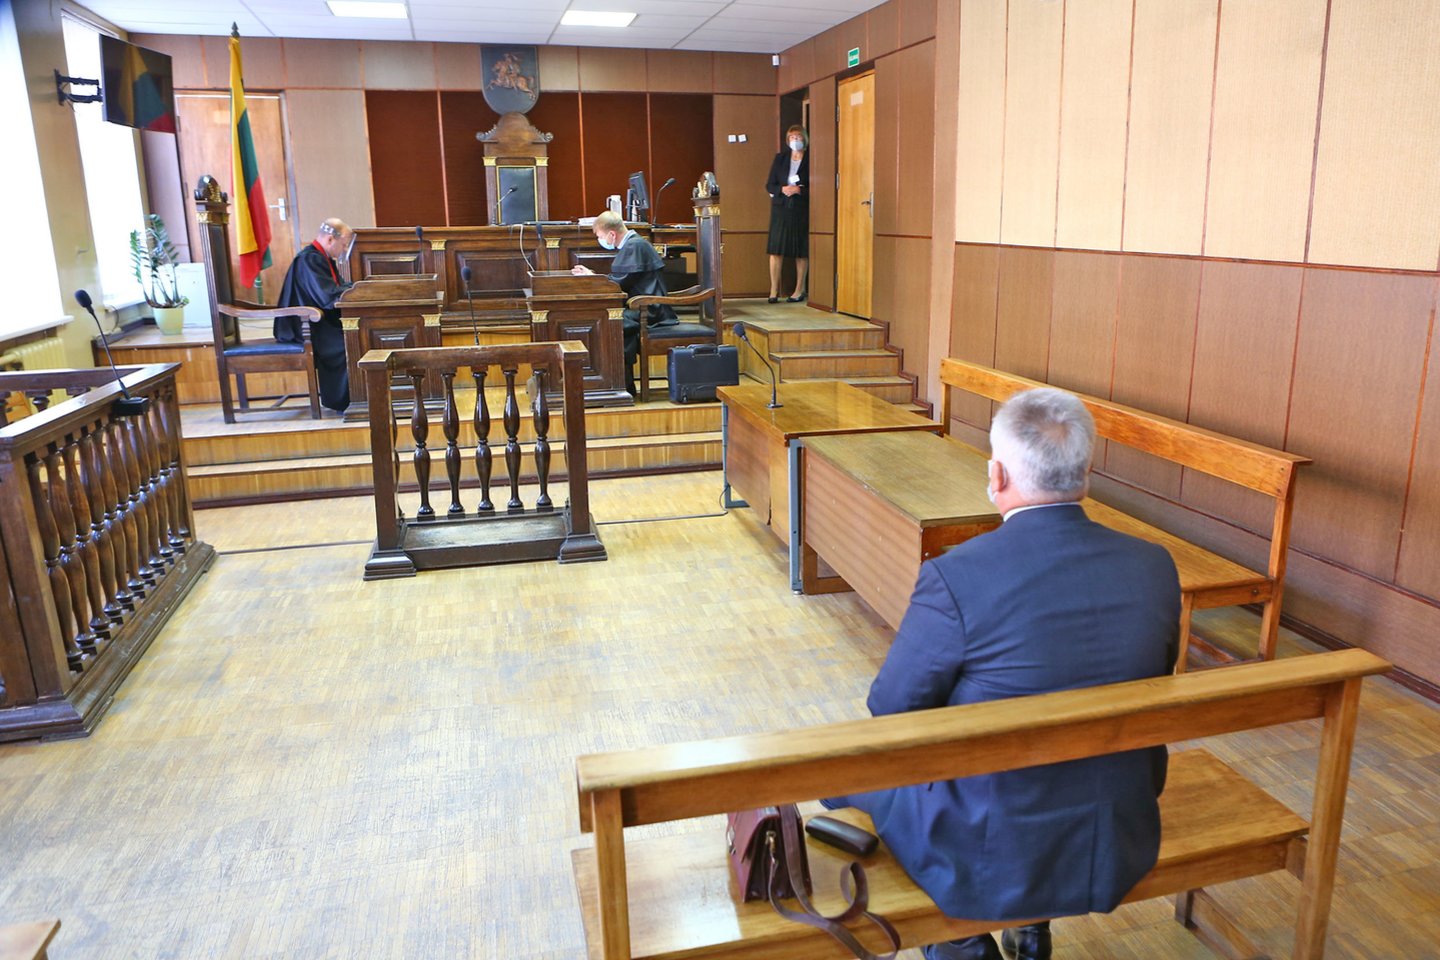  Nuo pareigų nušalintas korupcija kaltinamas Kelmės rajono meras V.Andrulis su advokatu M.Bliuvu teisme siekia išsiaiškinti, nuo ko prasidėjo ši istorija.  <br> G.Šiupario nuotr.